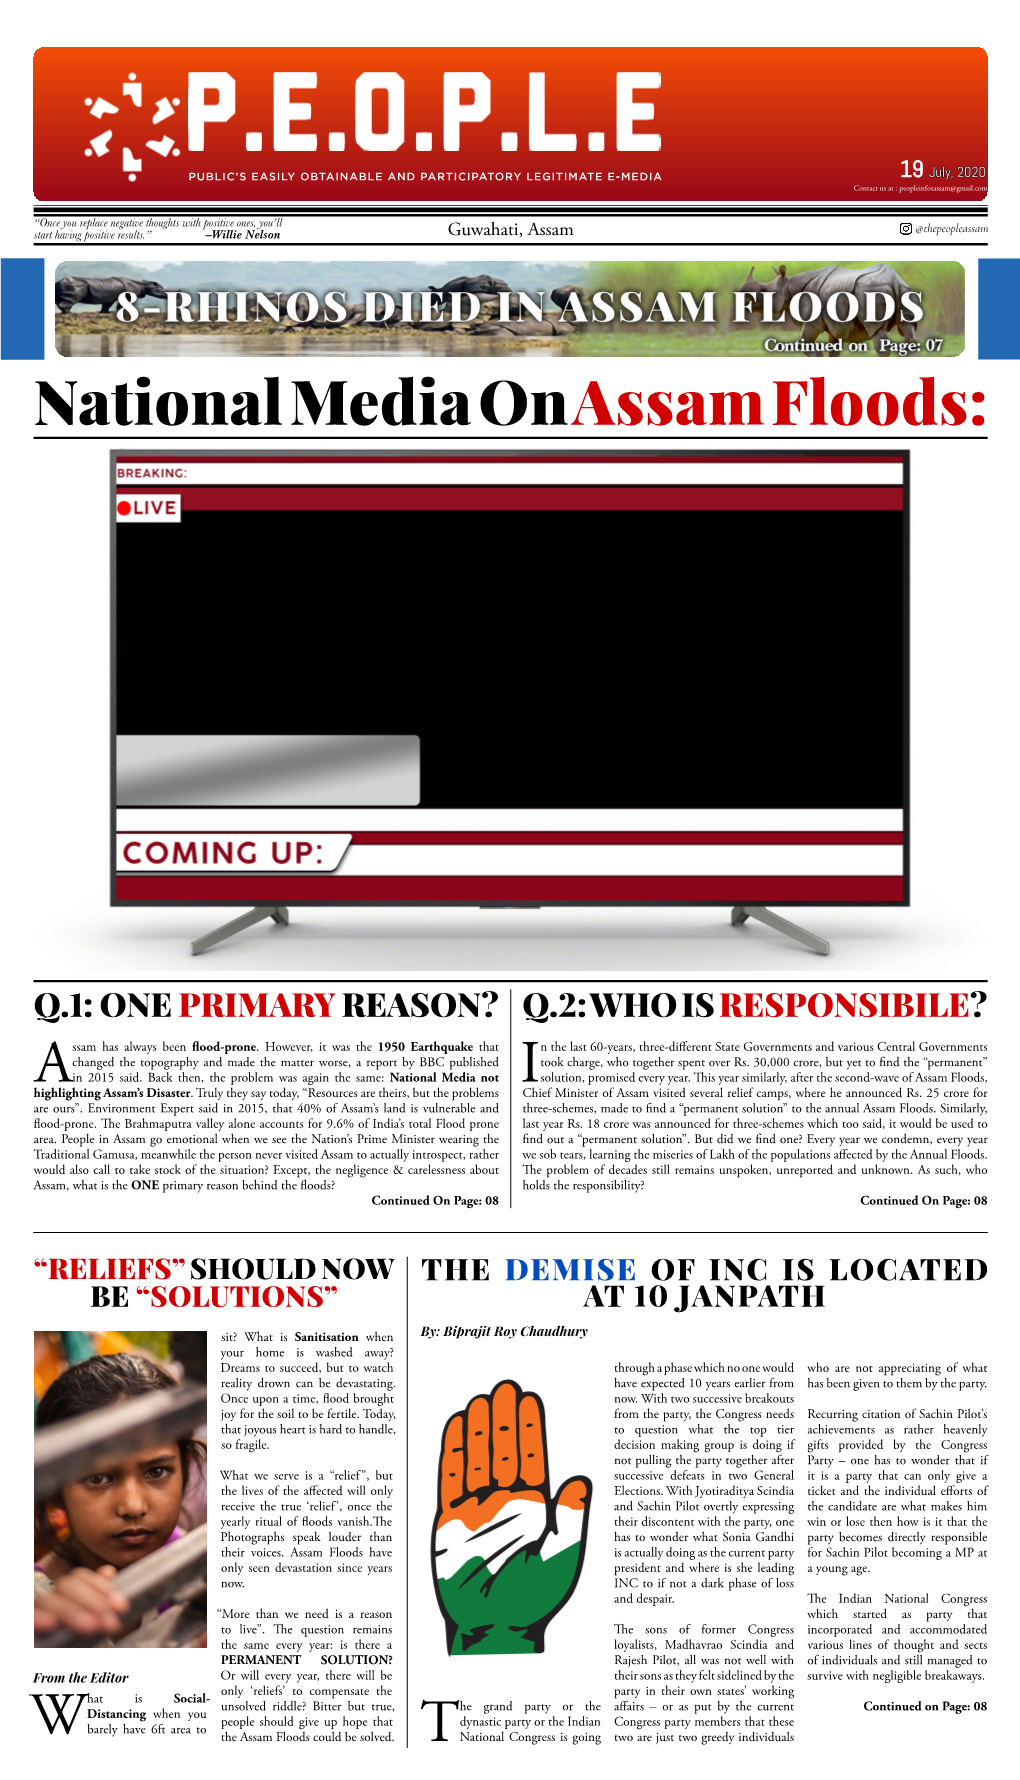 National Mediaon Assam Floods